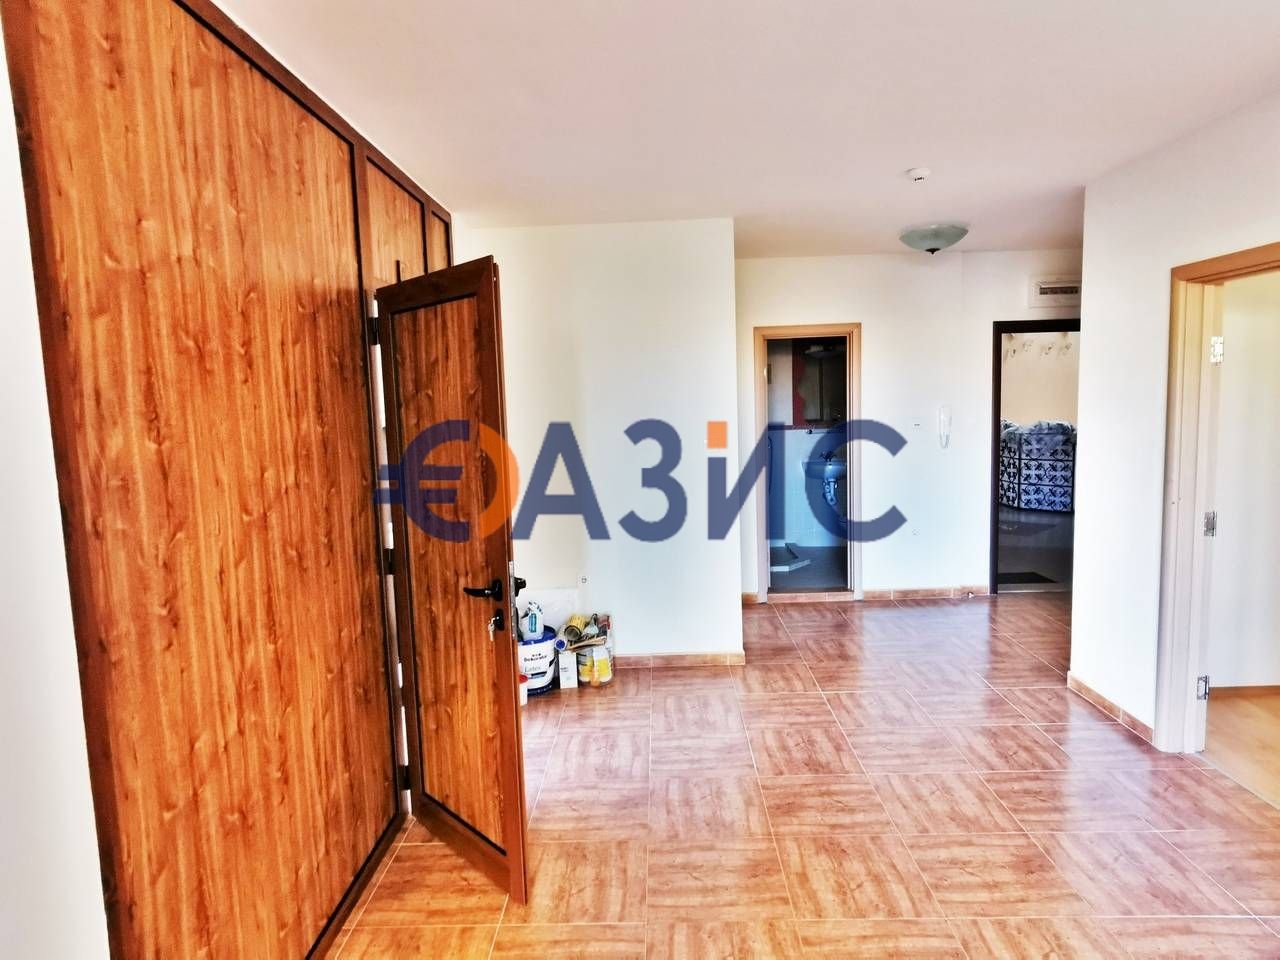 3-стаен апартамент на 2-ри етаж, Роял Бей-2, Свети влас, България-91.6